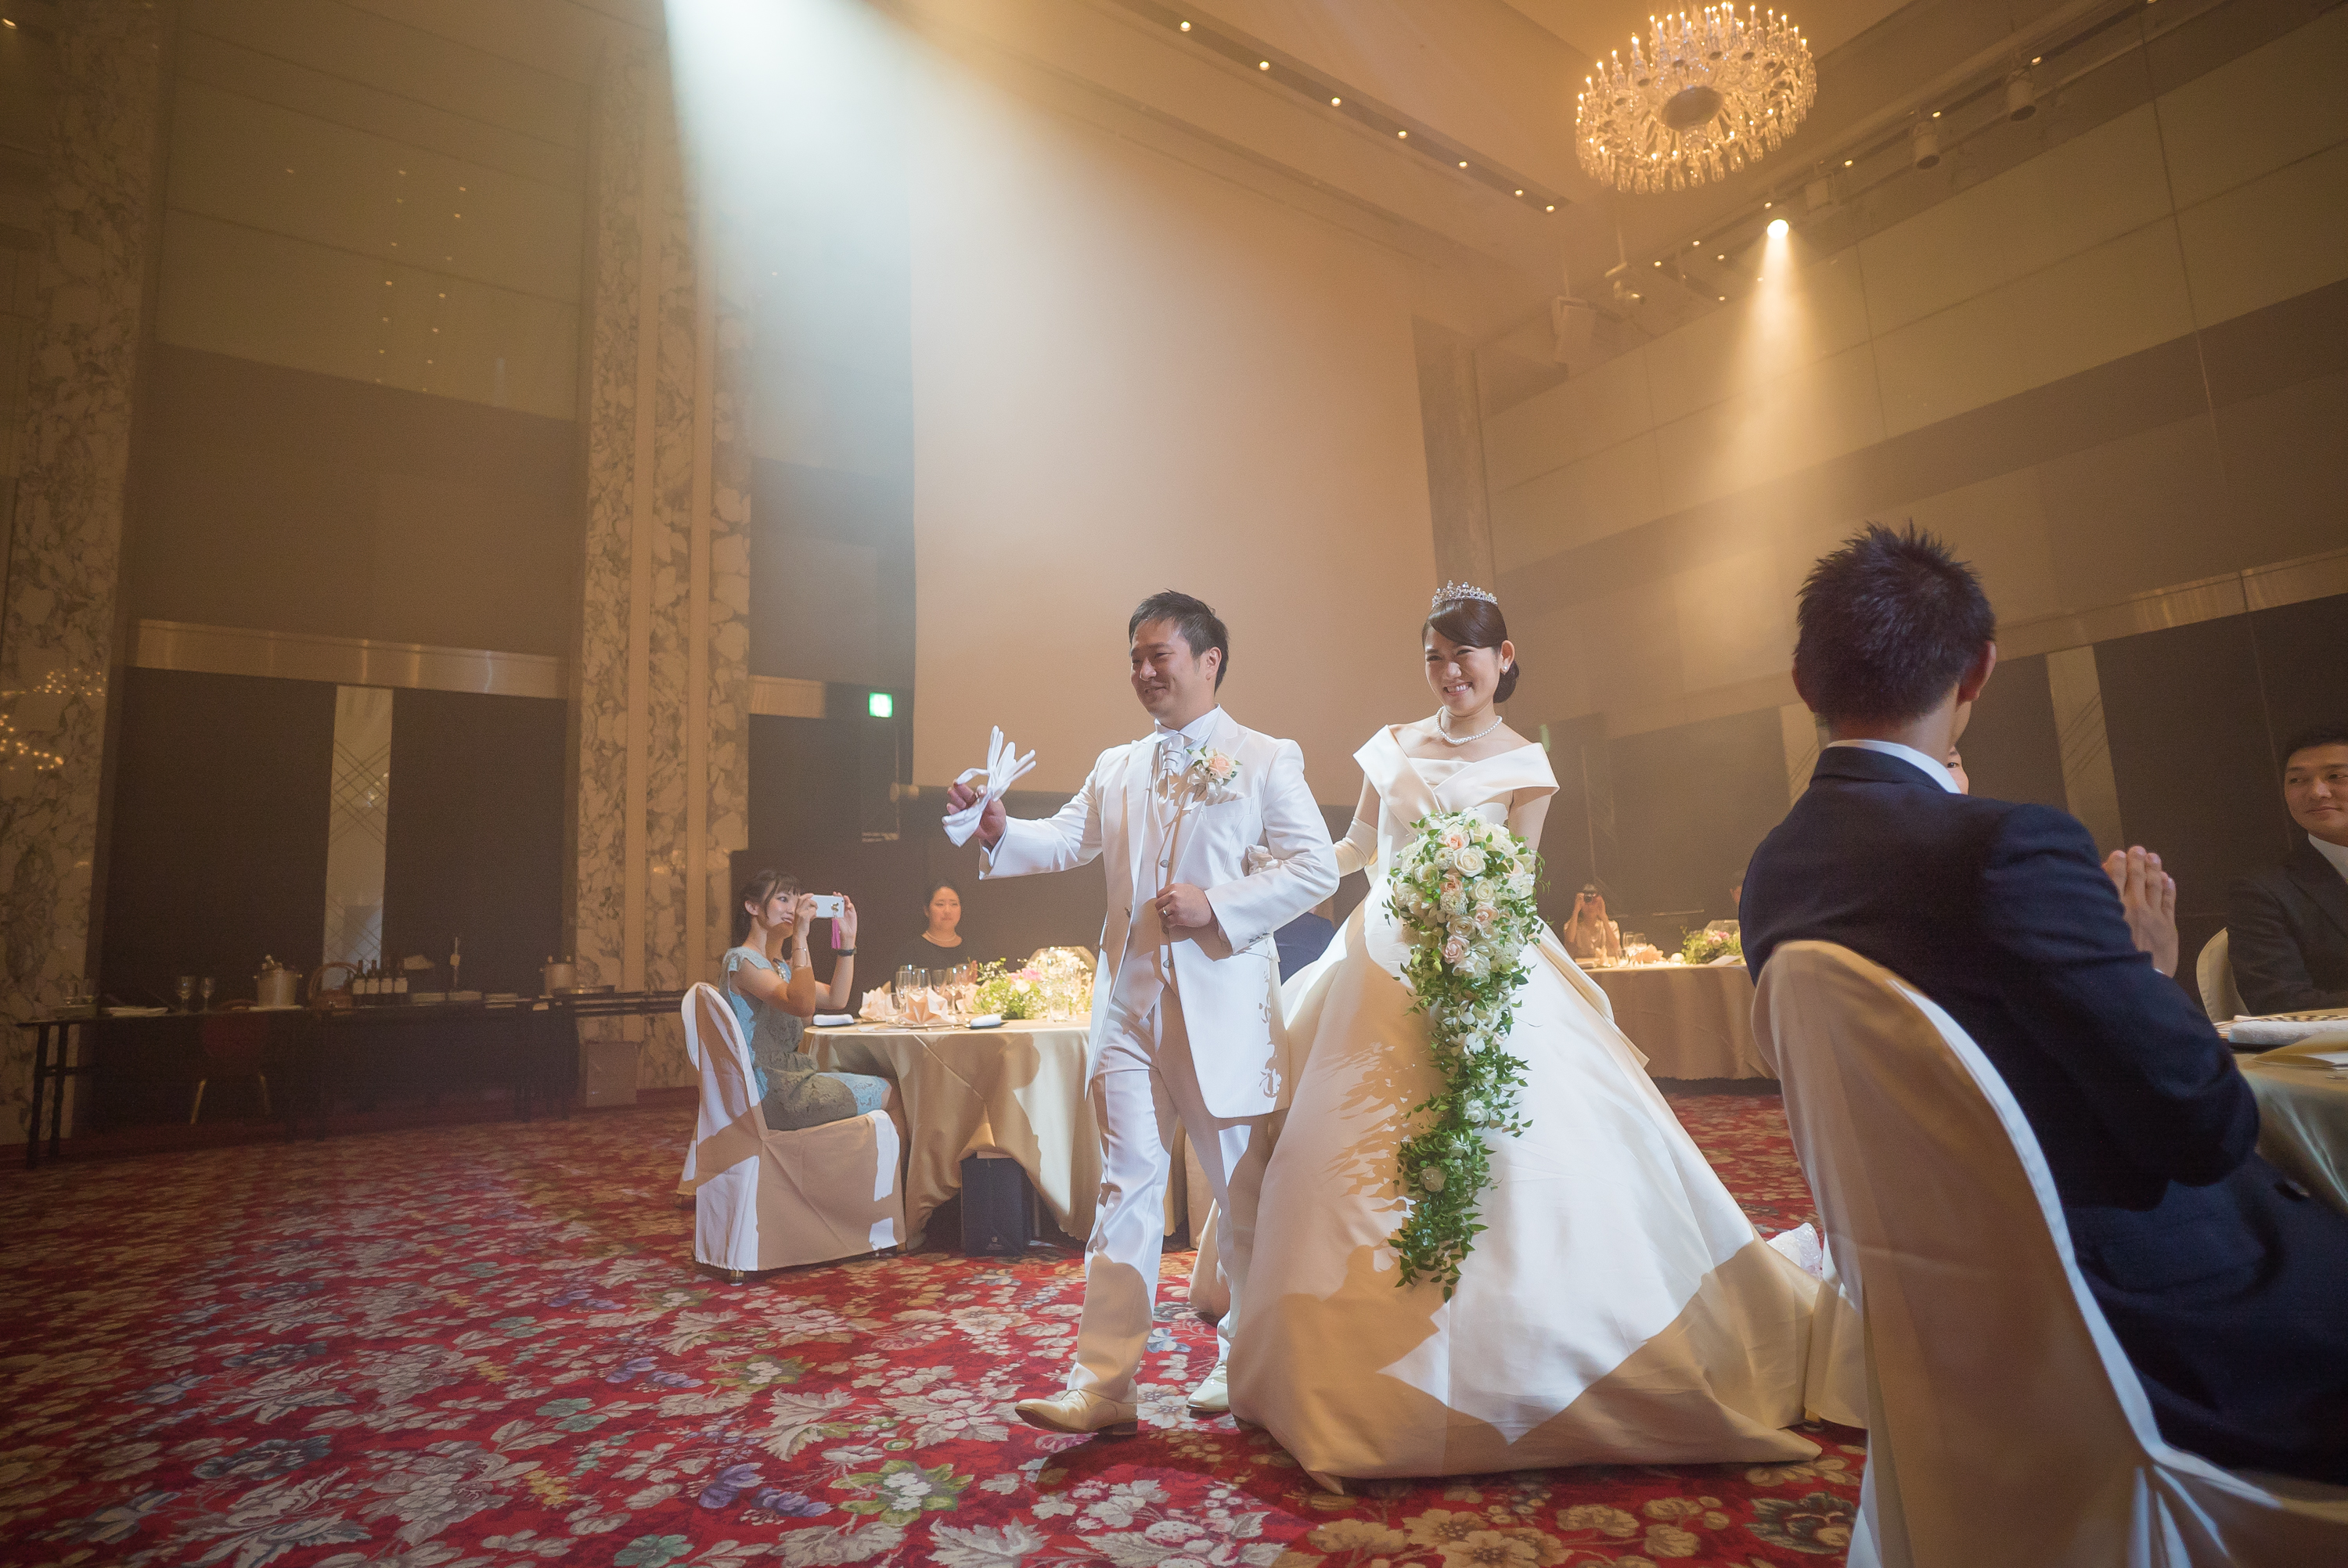 014ザ プリンスタワー東京 東京タワーが見える結婚式 お世話になった恩人達と アットホームな結婚式 ガラス張りのチャペル 高級ホテルで結婚式 みんな仲良し 都会のホテル 結婚式出張撮影ギリフォトワークス